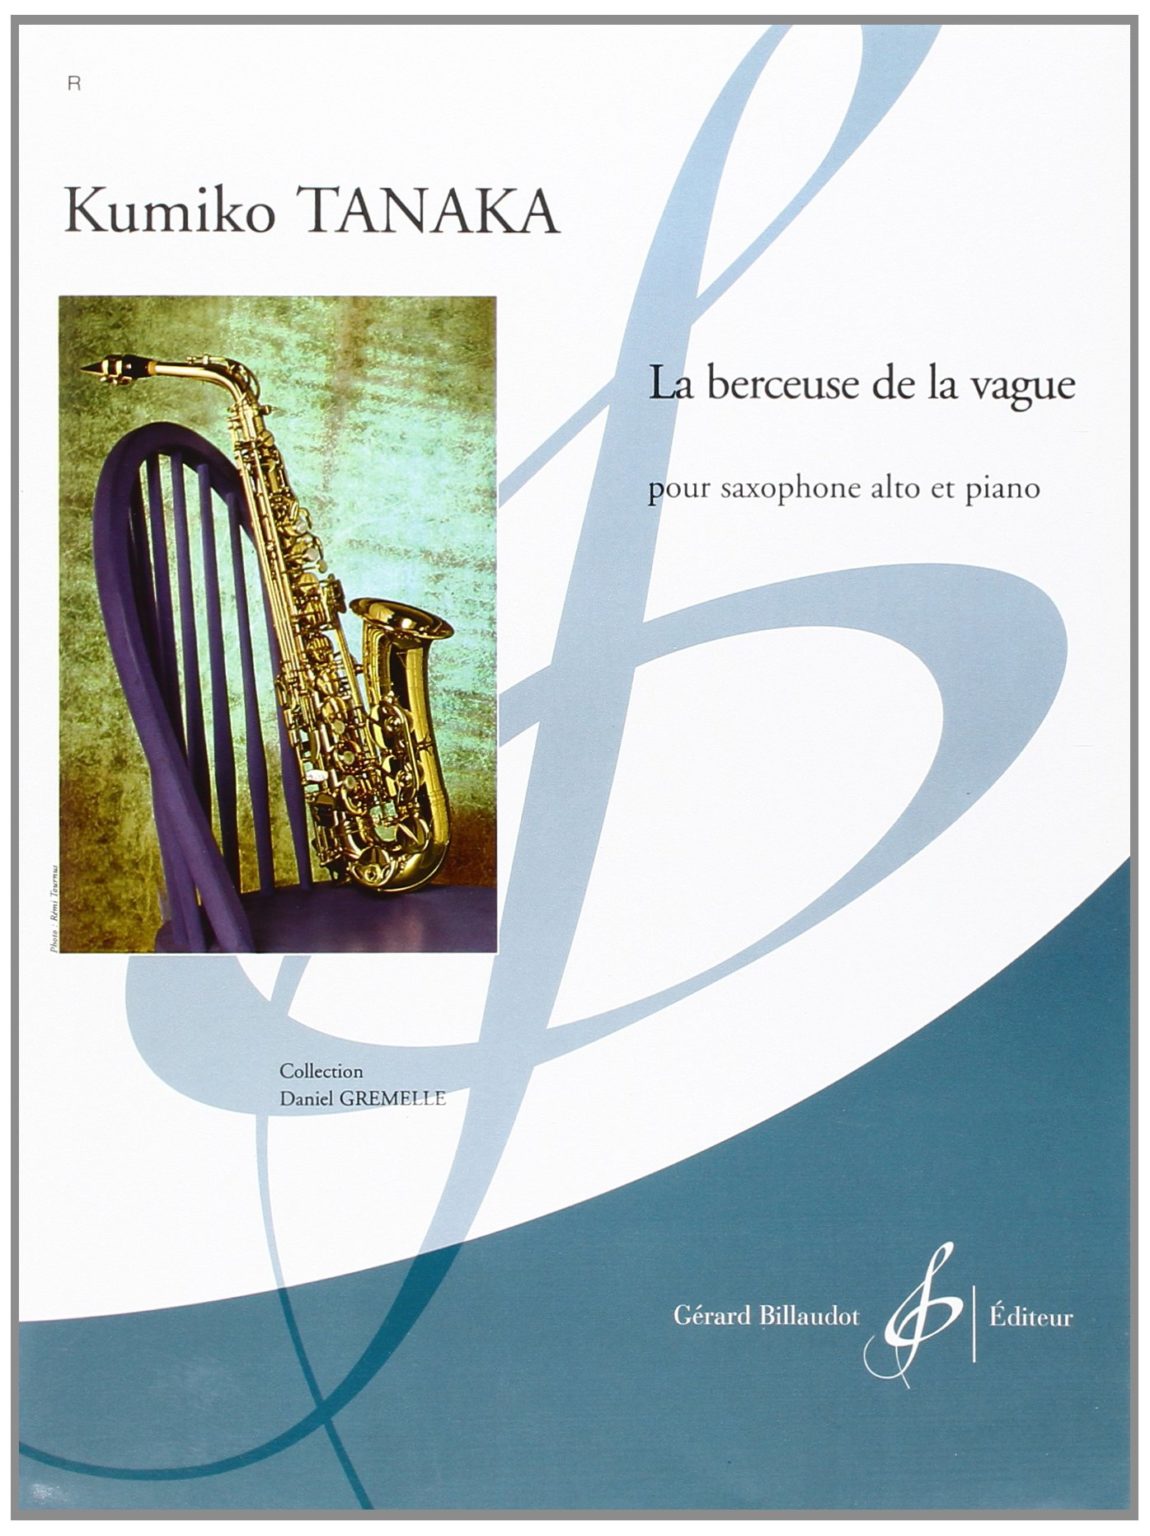 La Berceuse de la Vague (2003) para saxofón alto y piano. Kumiko Tanaka